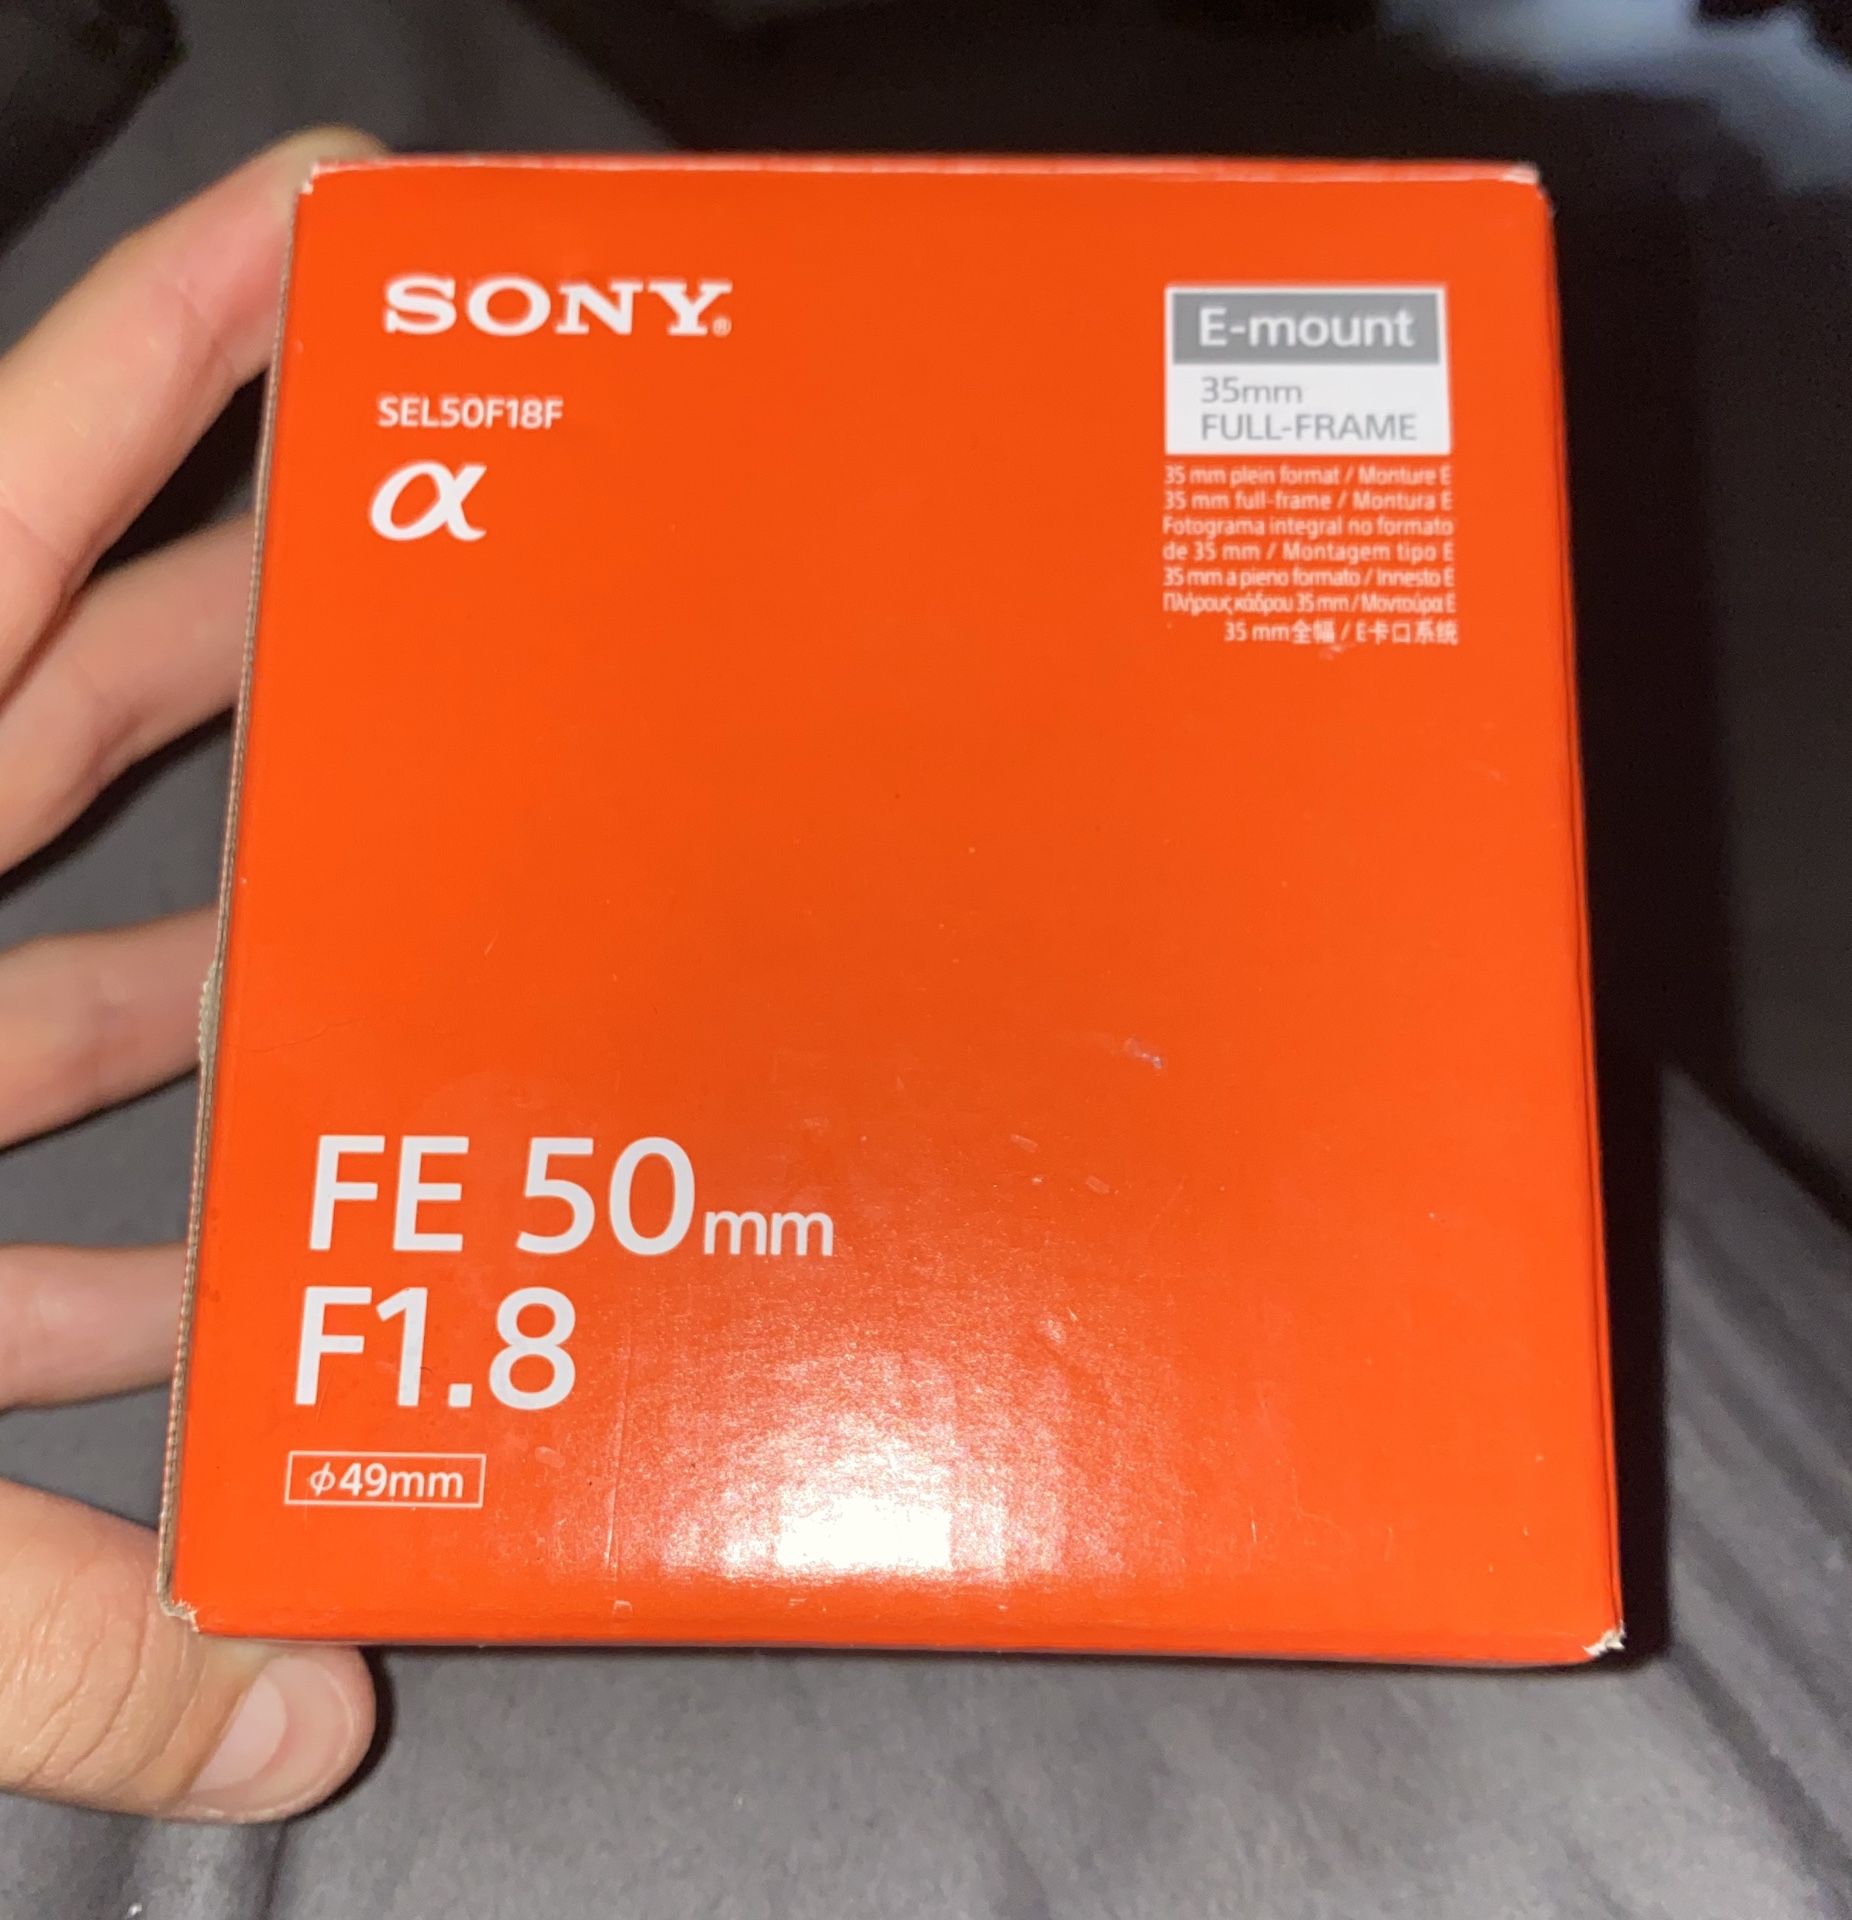 Brand new Sony e mount lens